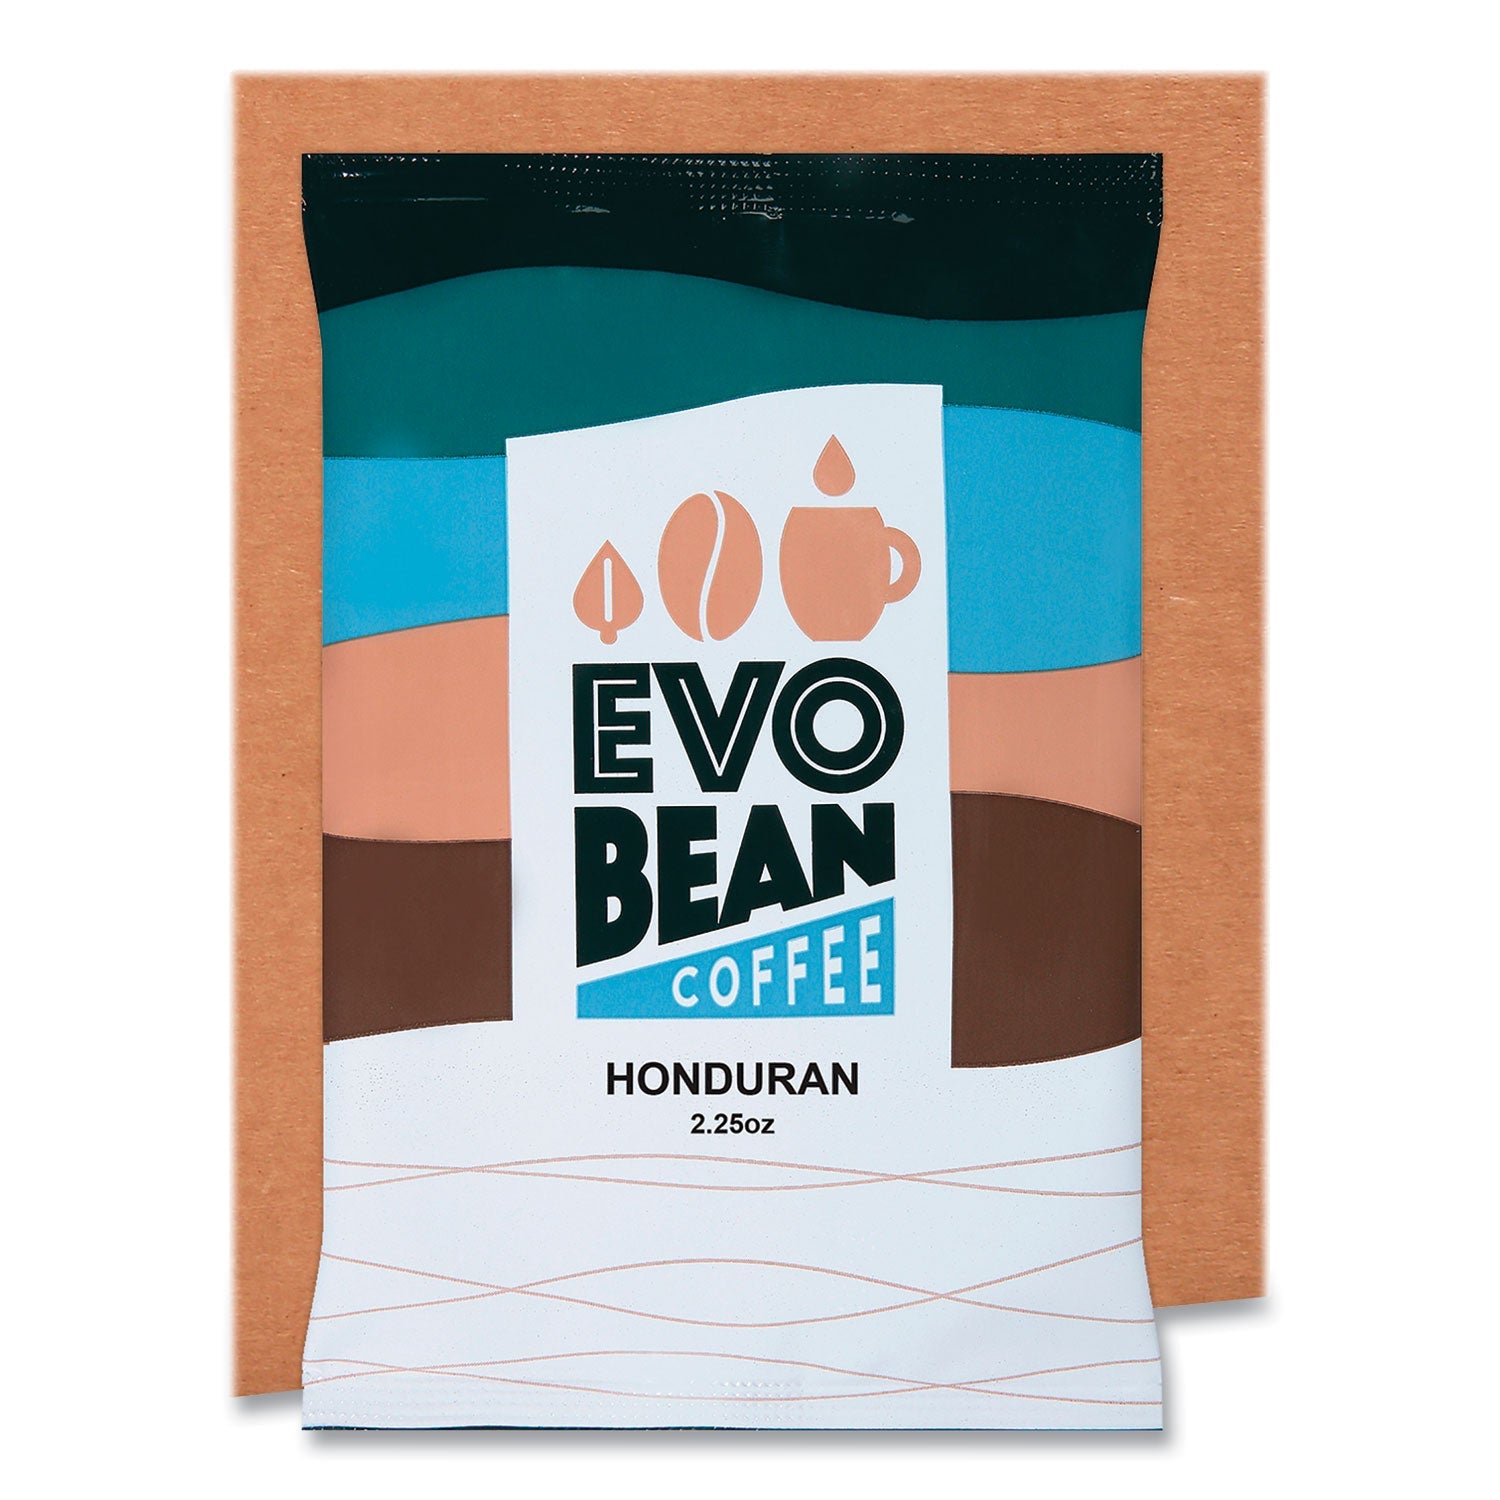 Evobean Honduran Coffee 2.25 Oz Pouch